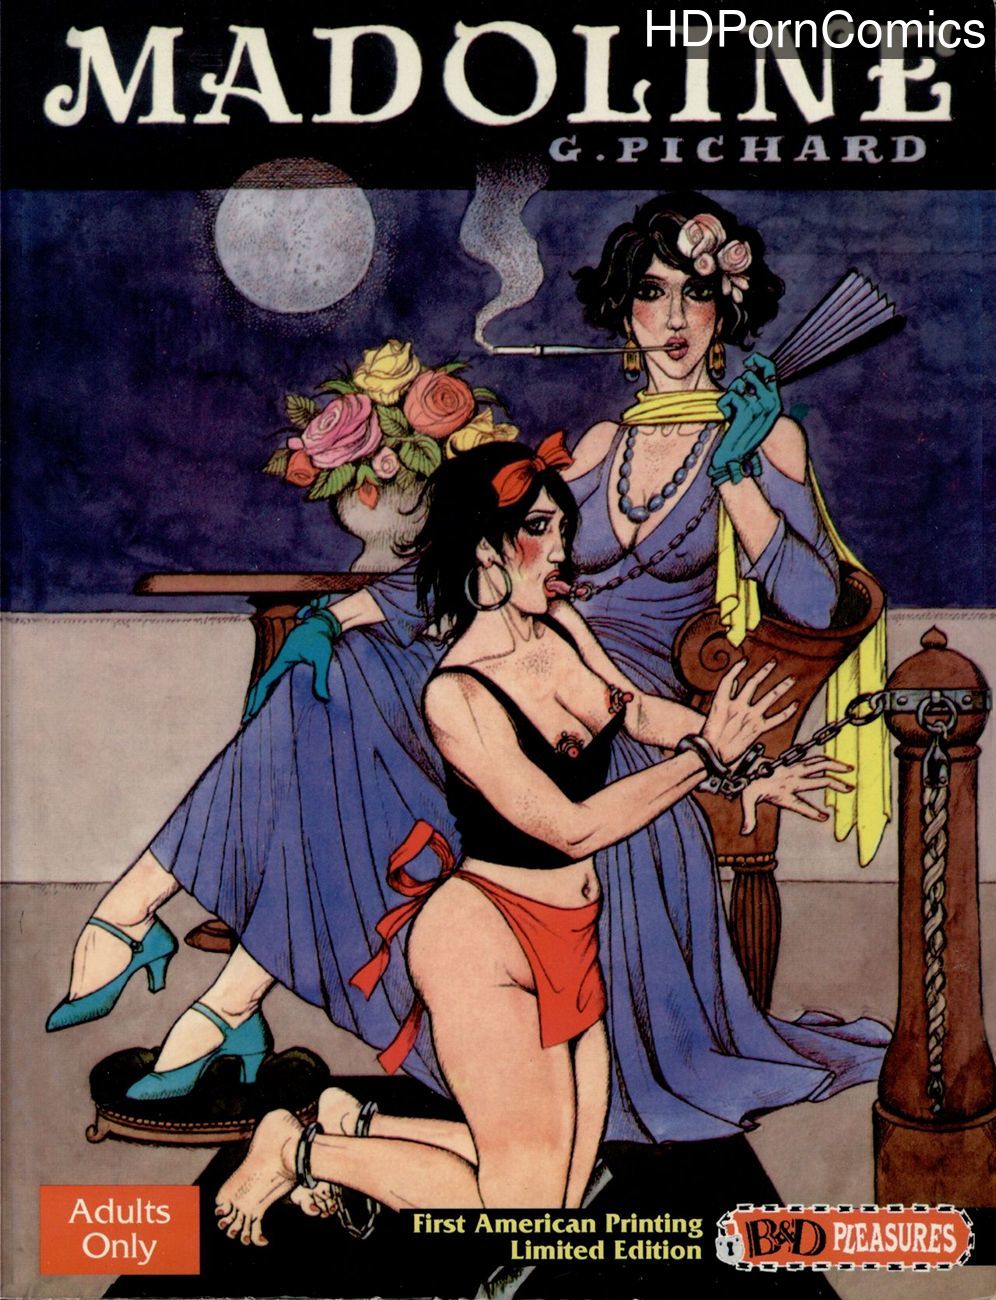 Graphic Novels Xxx - Madoline 1 comic porn - HD Porn Comics